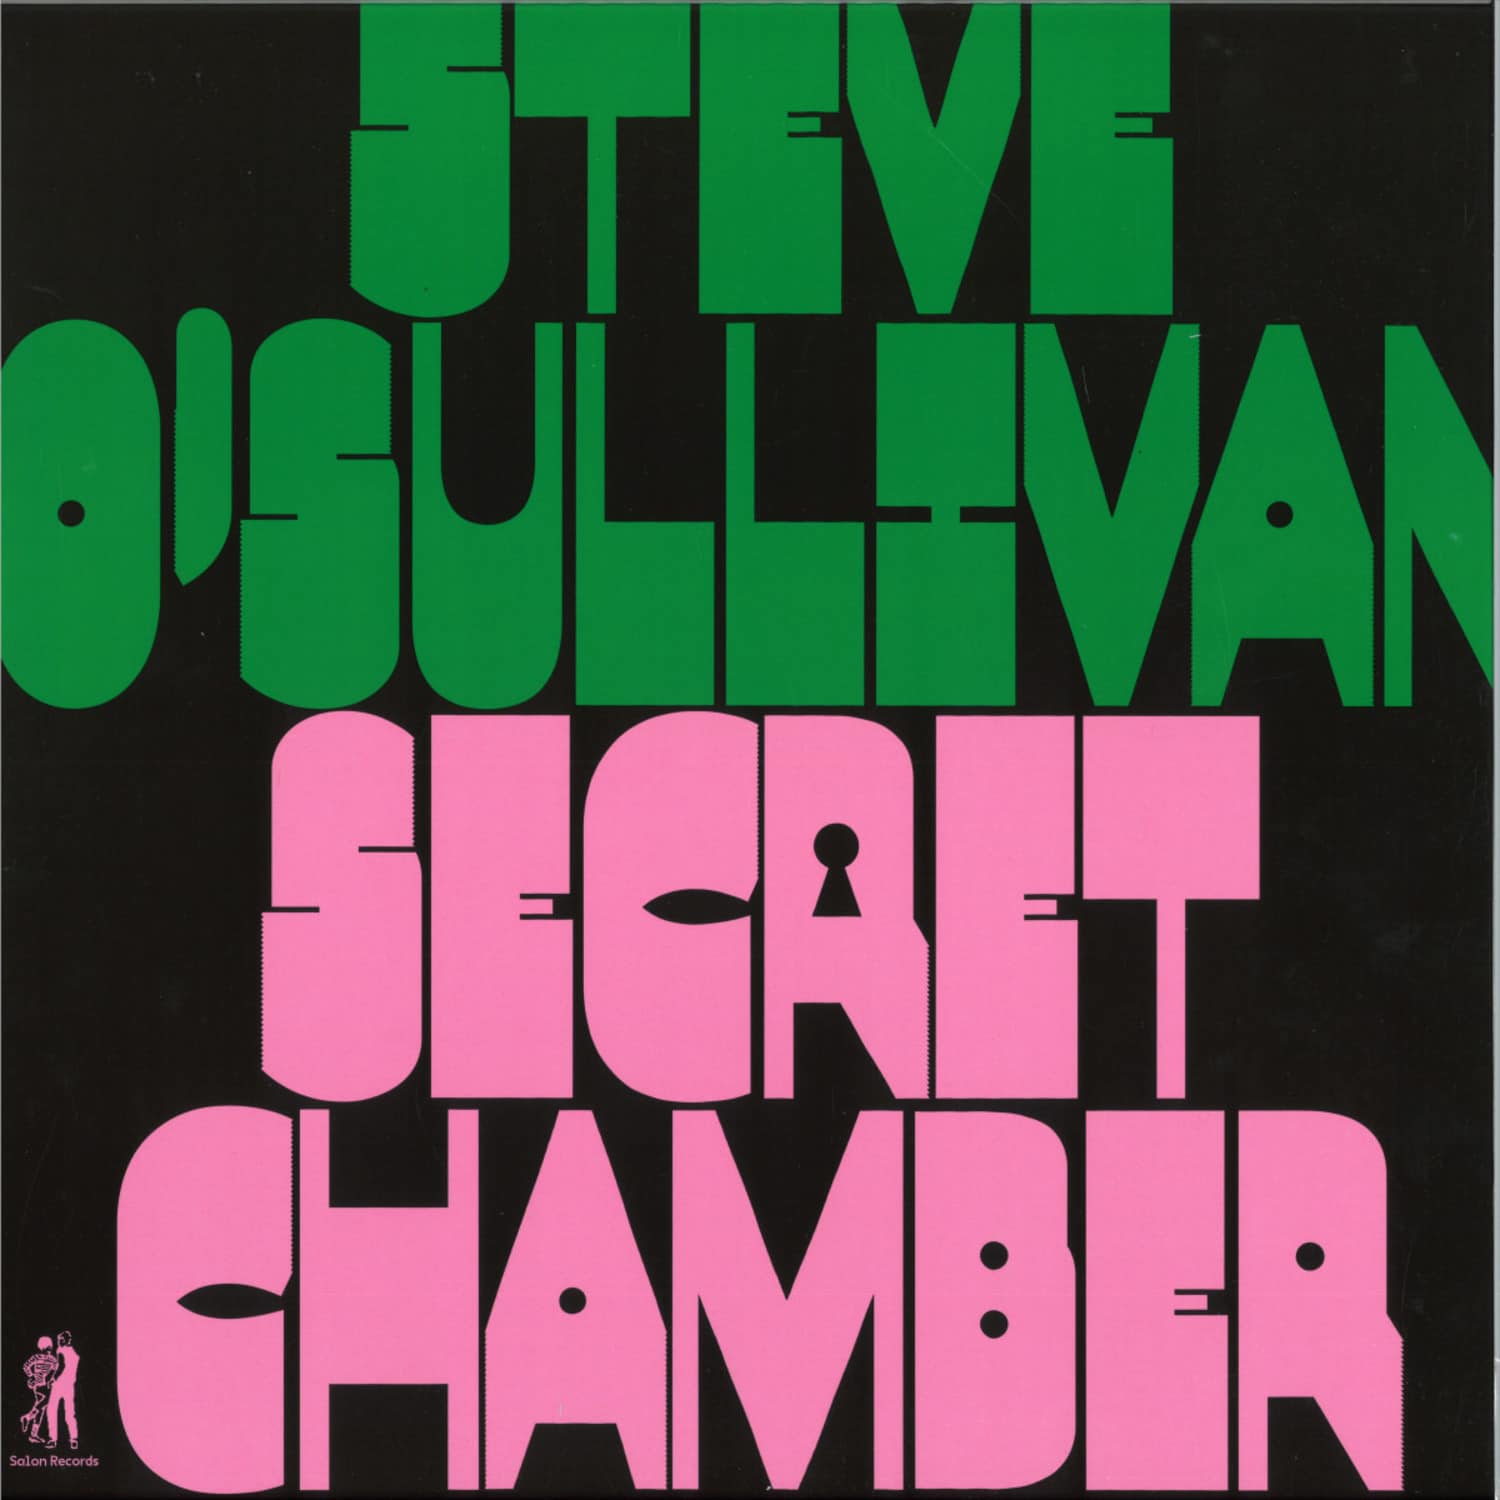 Steve O Sullivan - SECRET CHAMBER